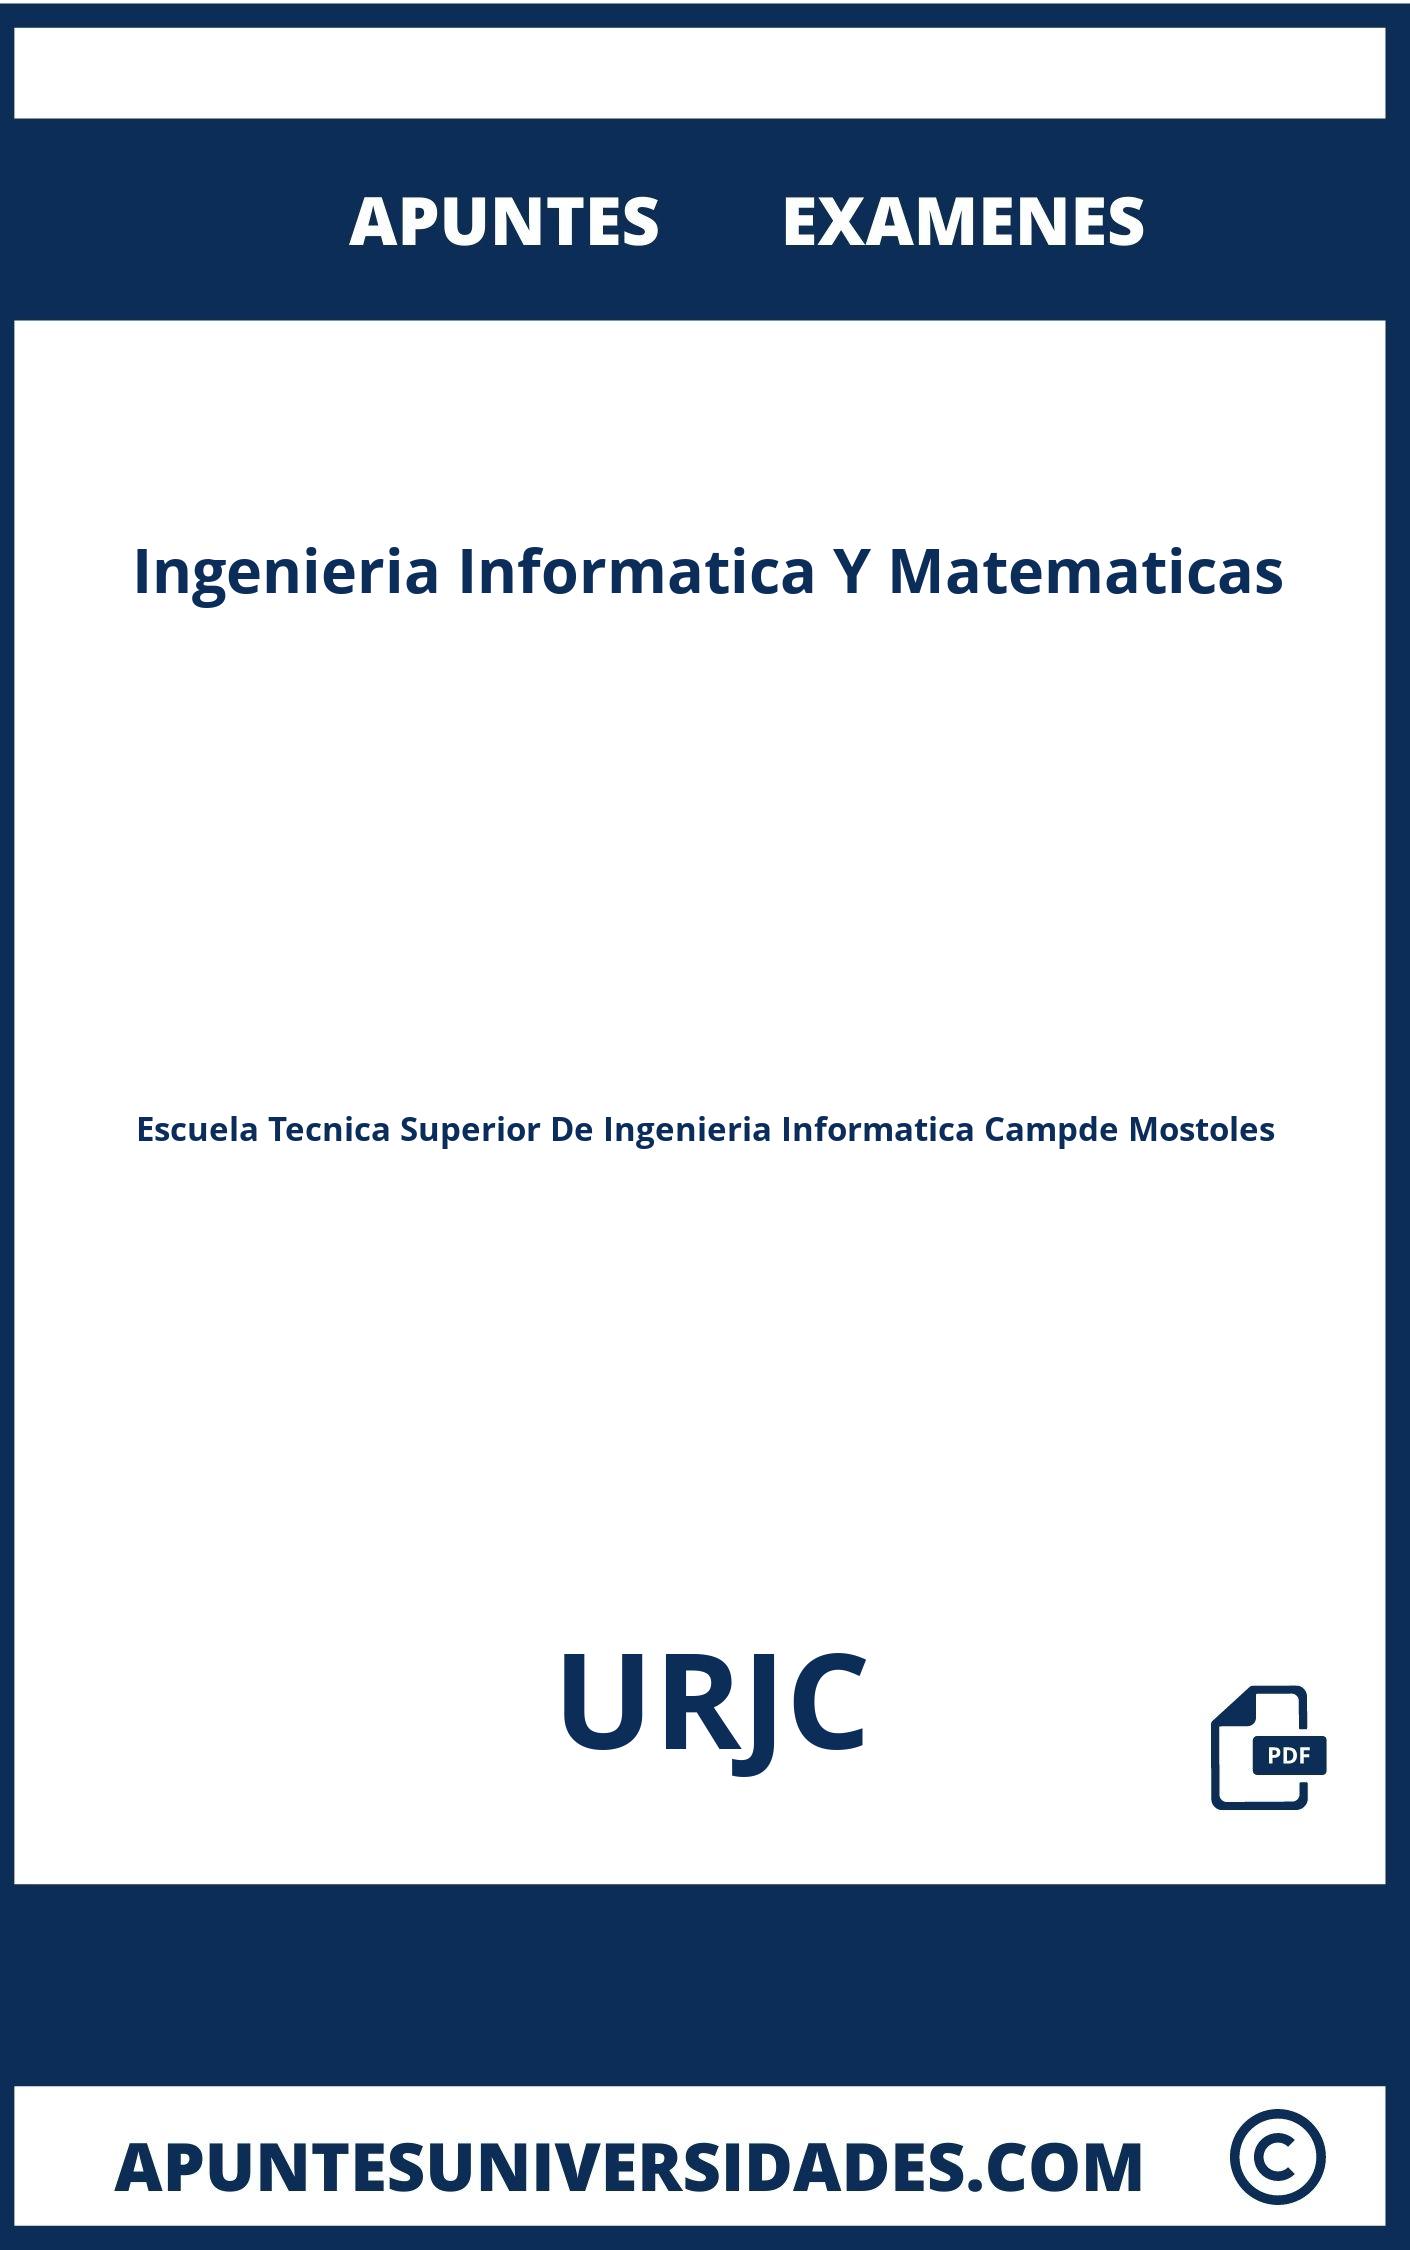 Examenes y Apuntes Ingenieria Informatica Y Matematicas URJC